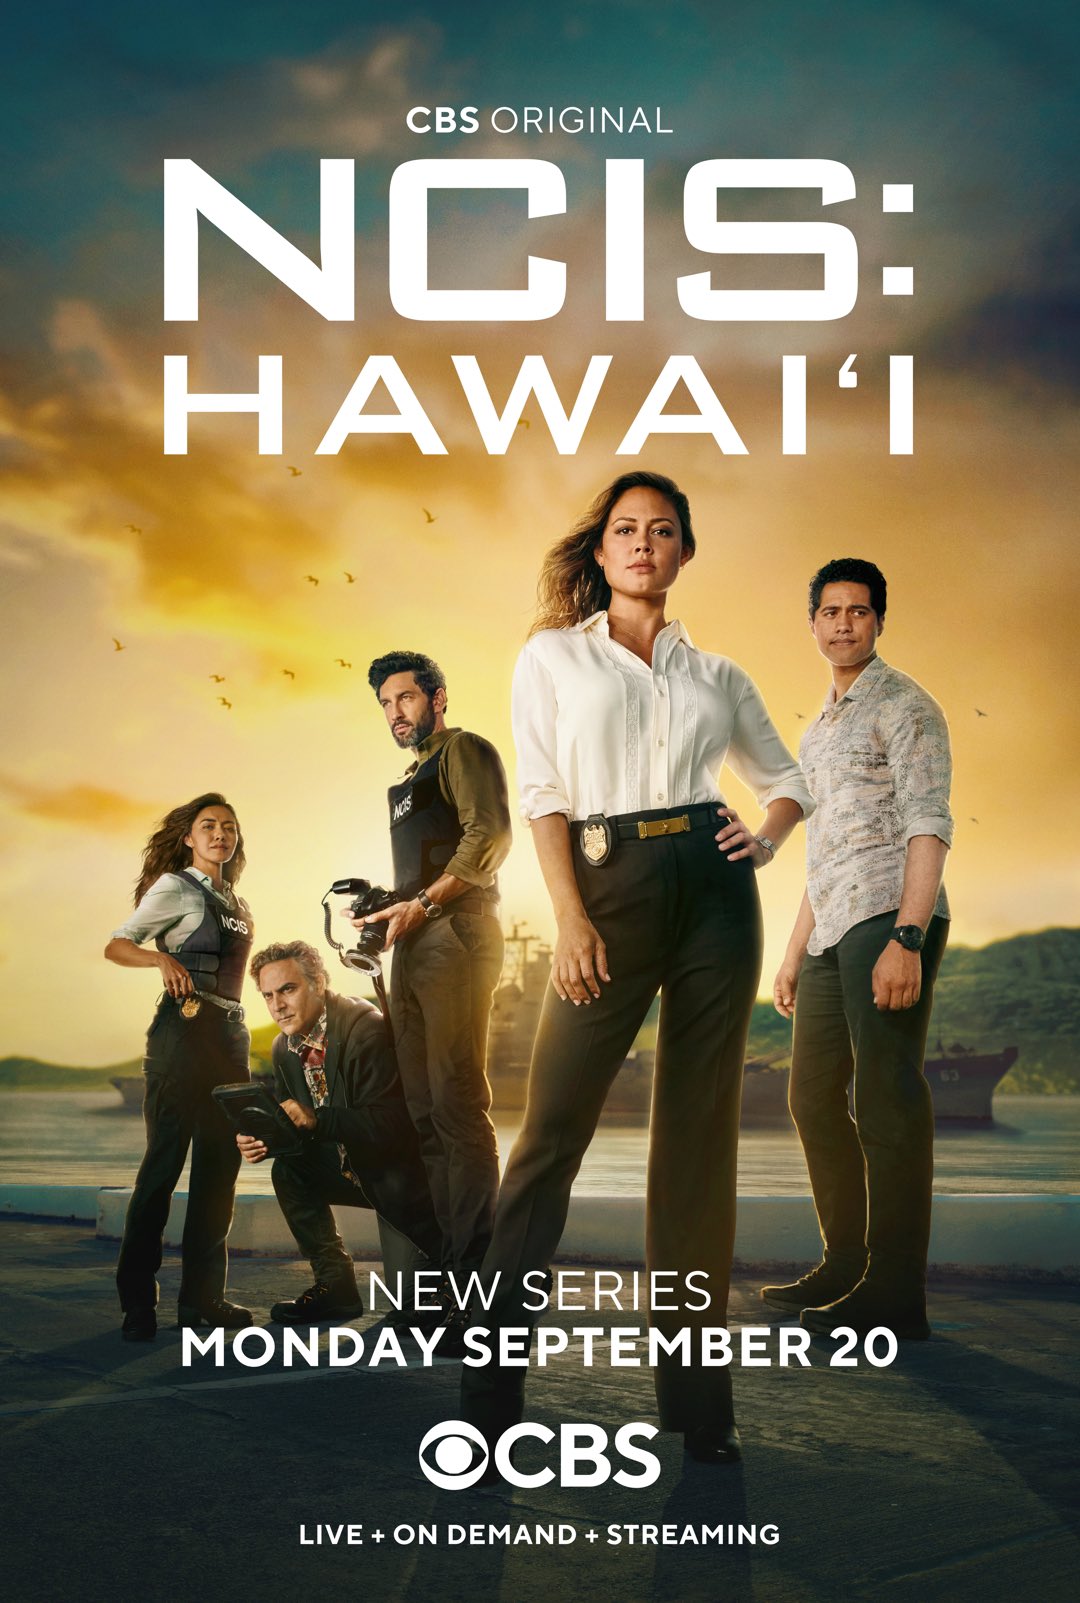 Meet NCIS Hawaii's New Character!